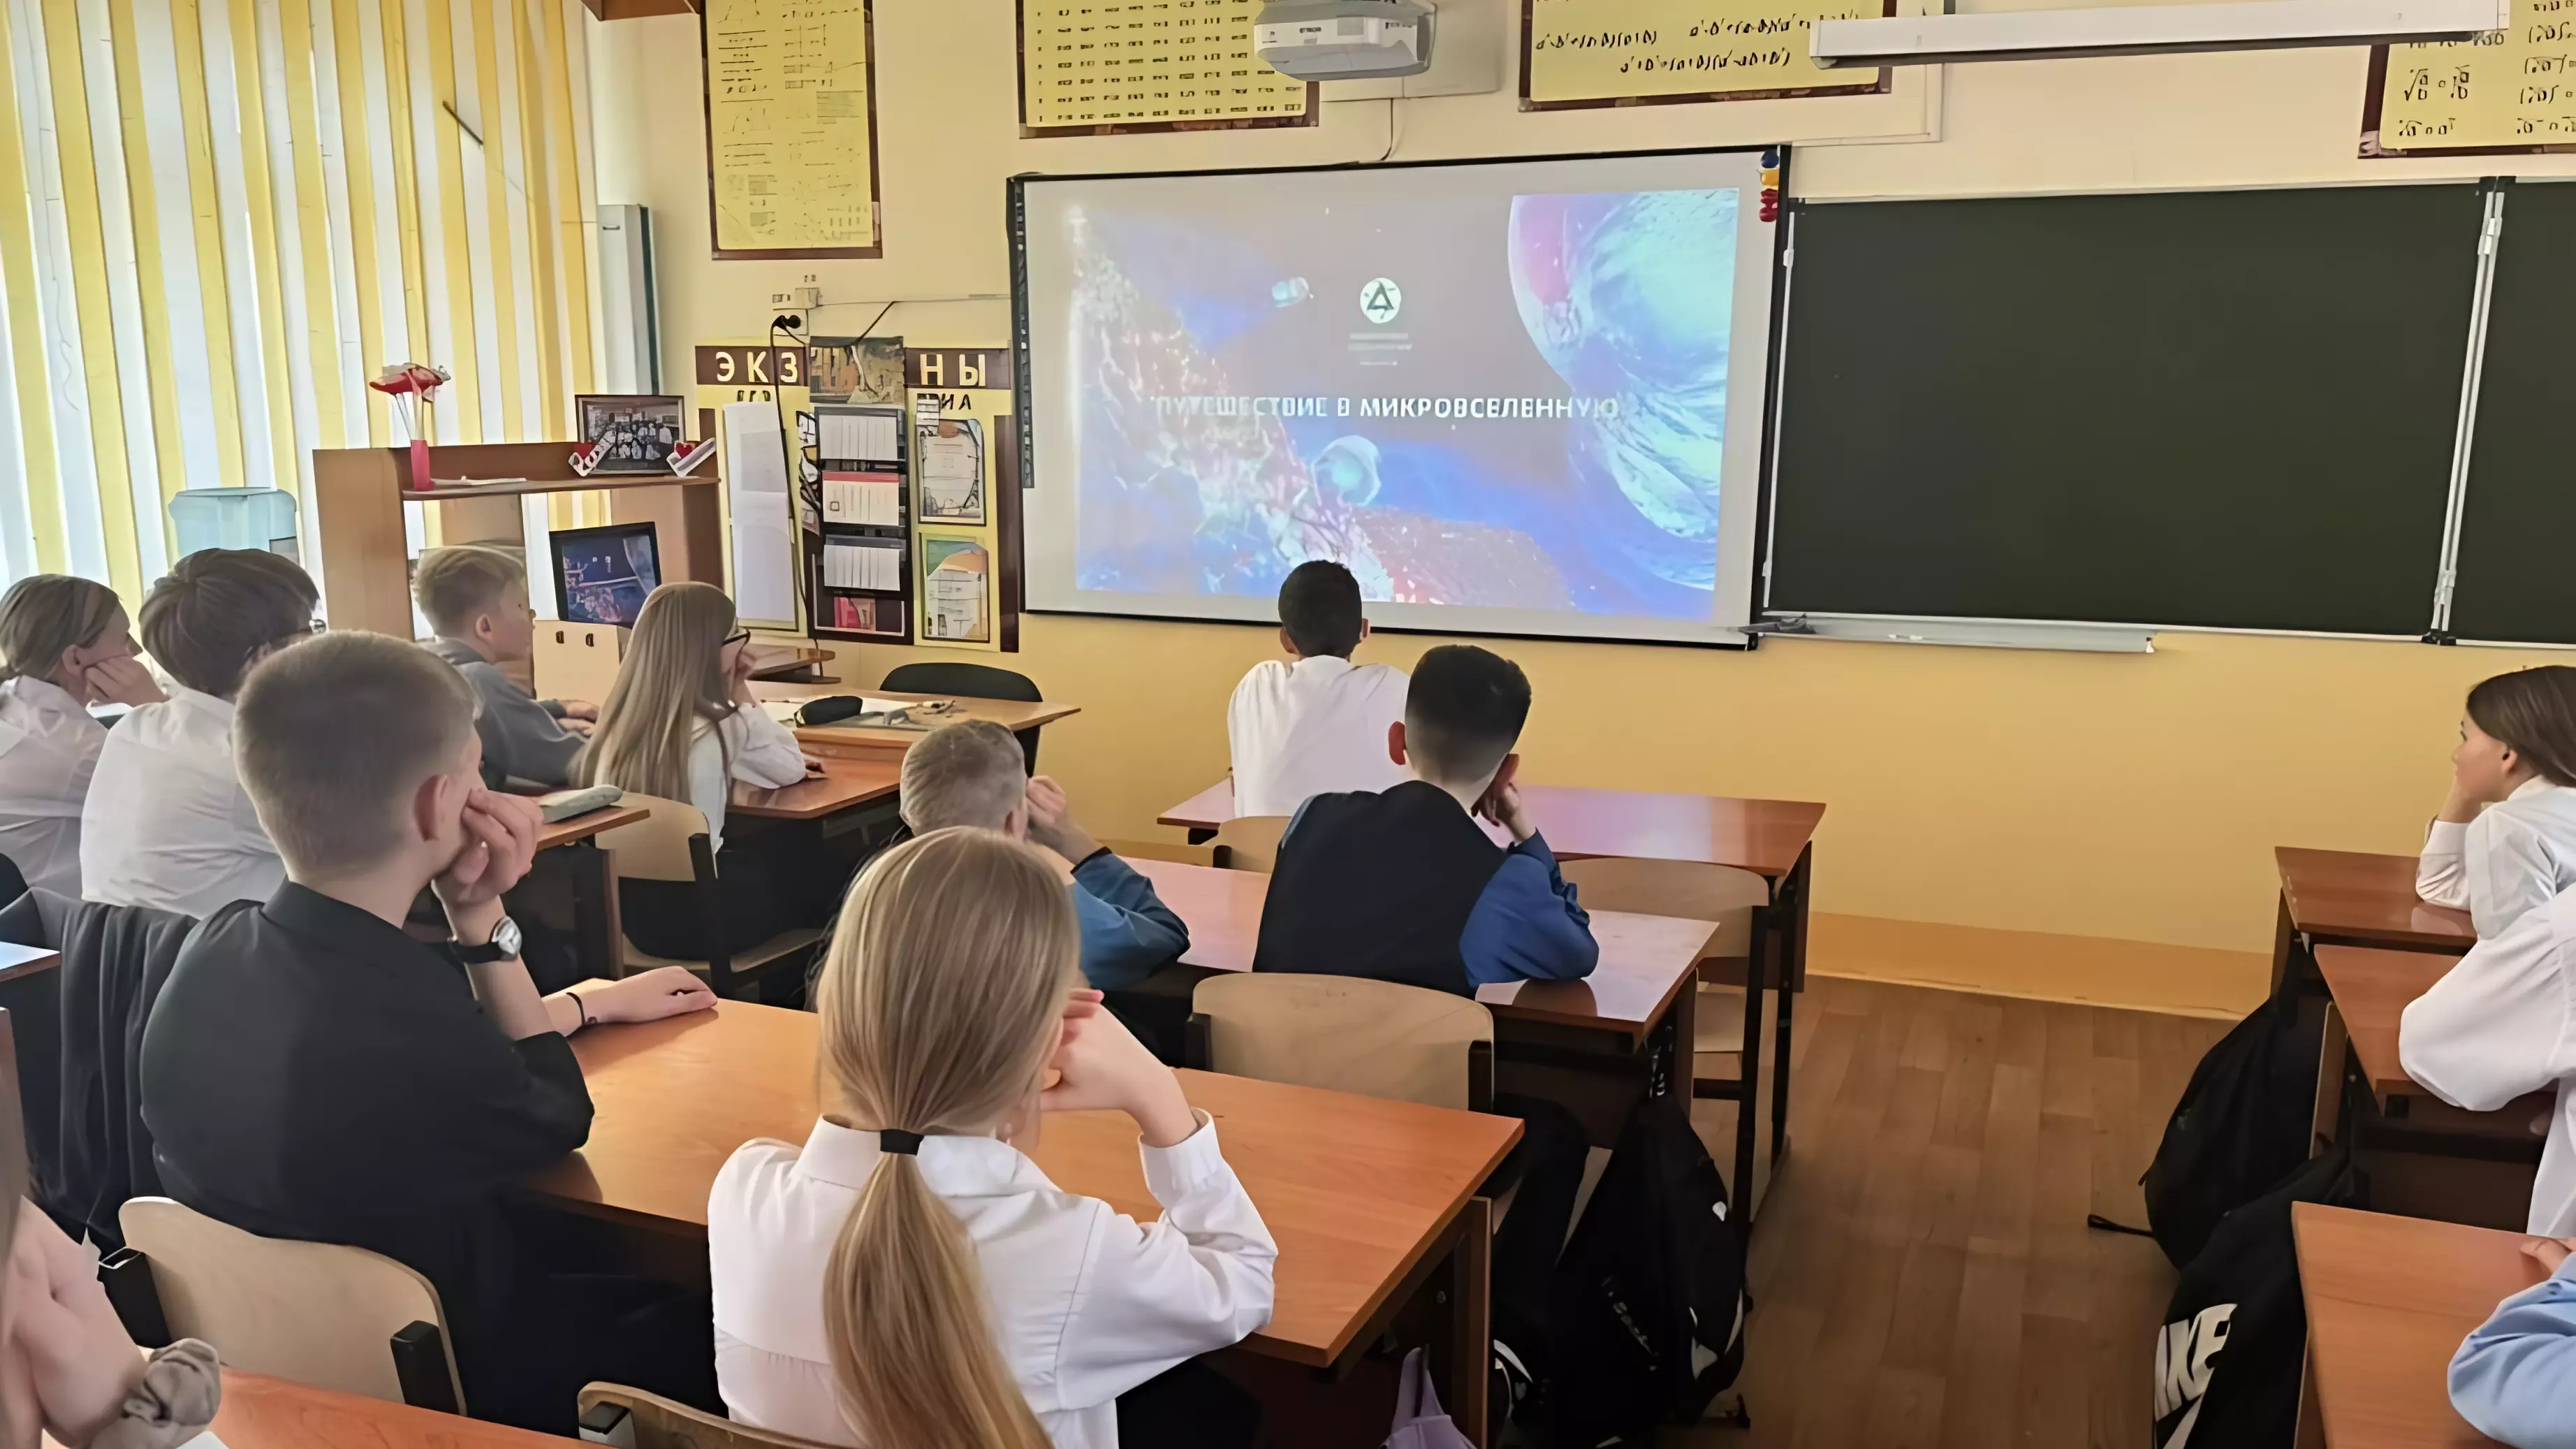 В школах Хабаровского края проходит «Урок цифры», посвящённый квантовым технологиям